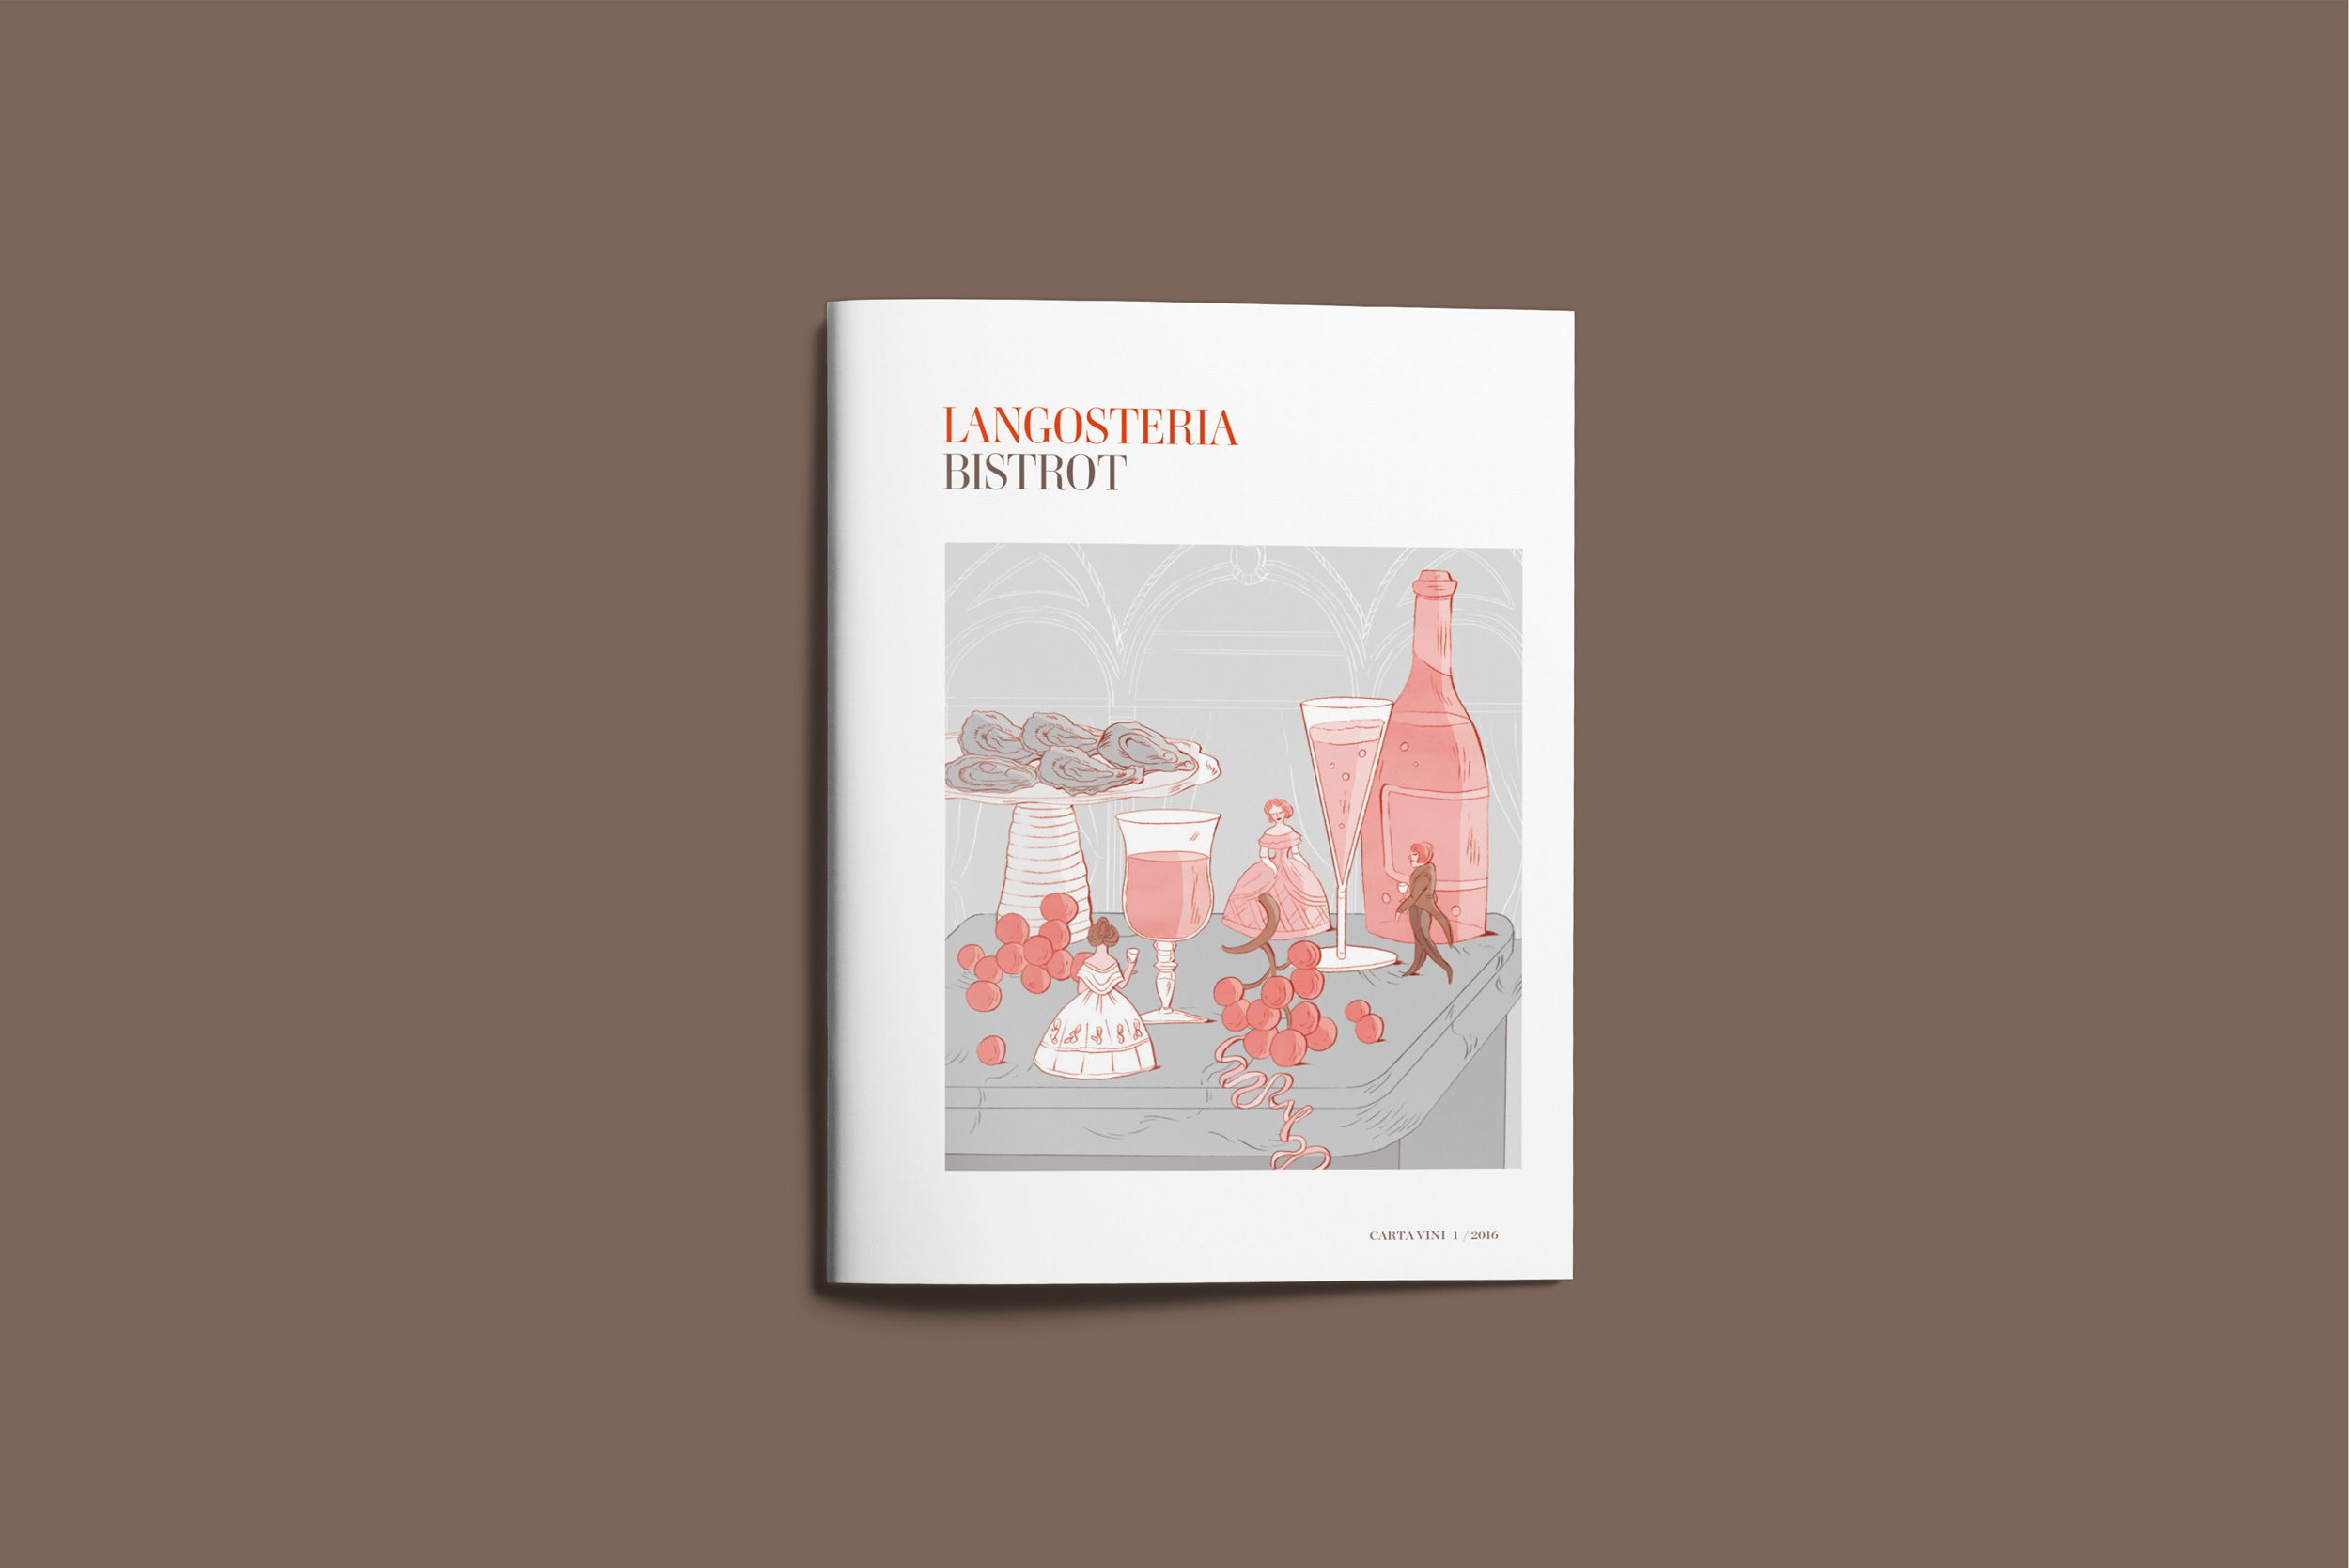 2018 03 13 Langosteria Bistrot menu vini copertina